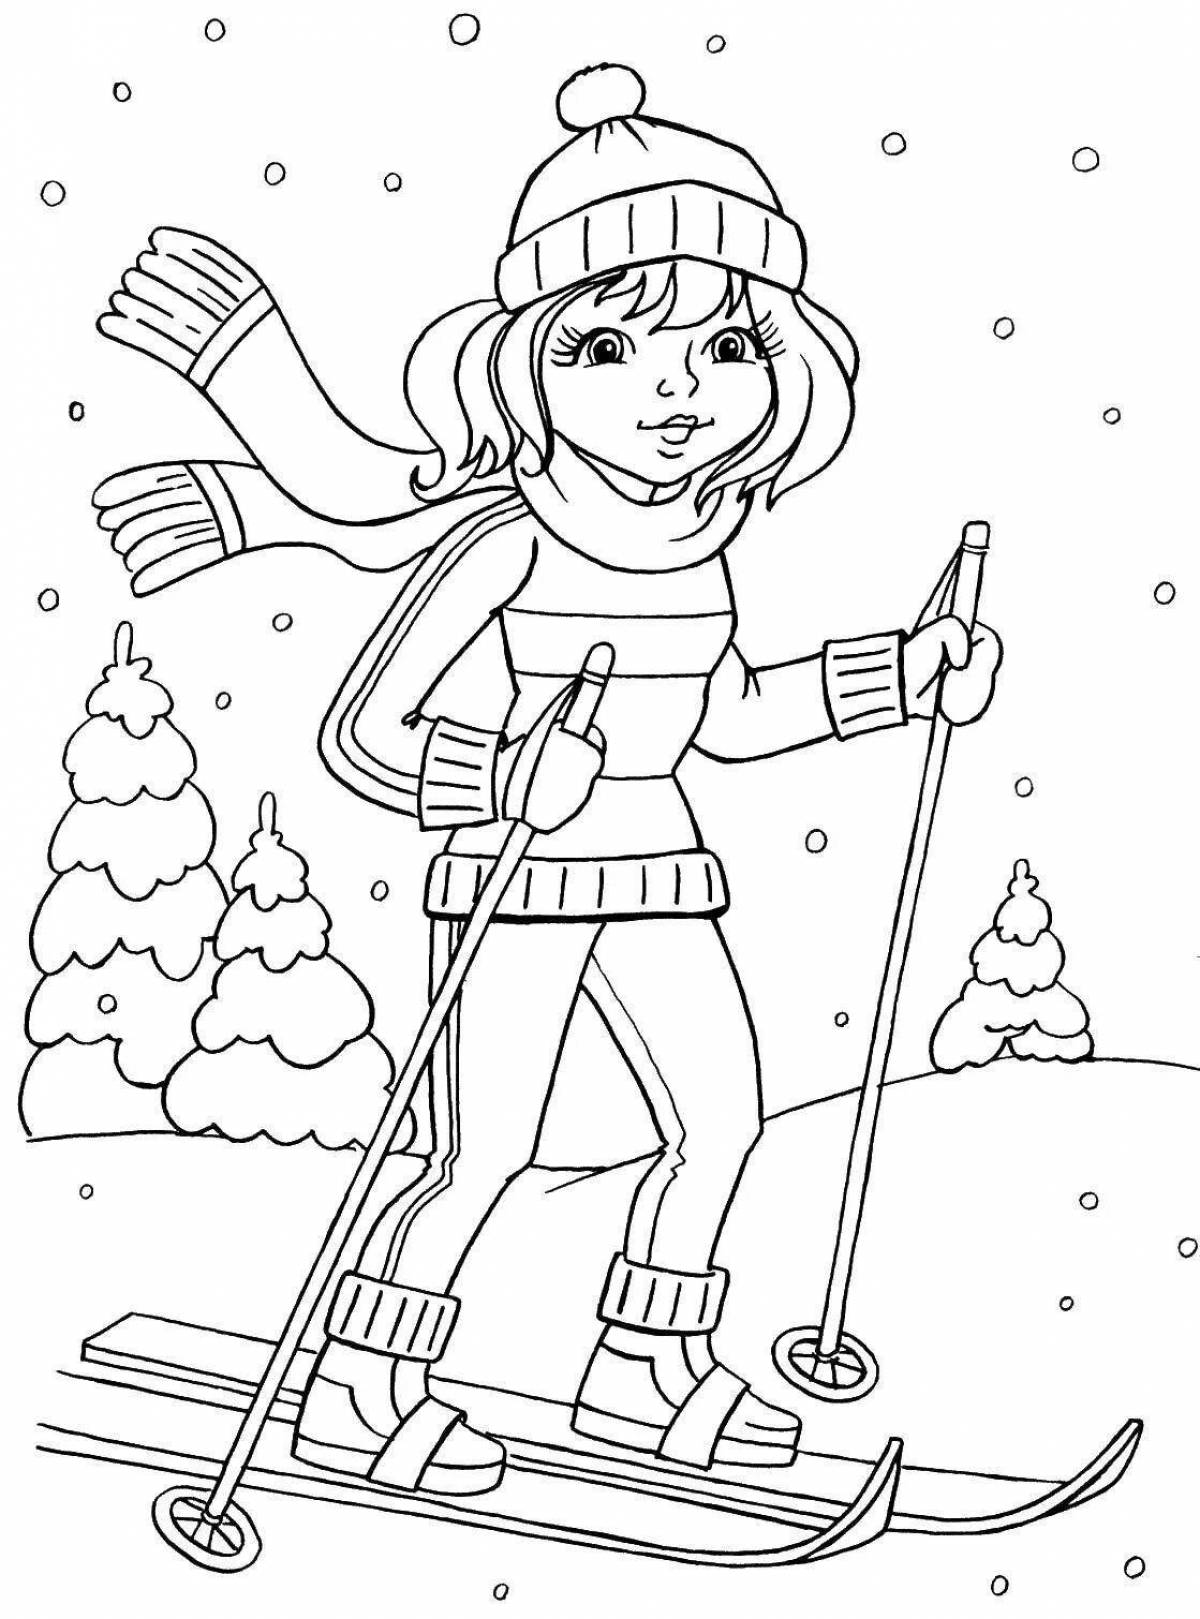 Развлекательная раскраска лыжник для дошкольников